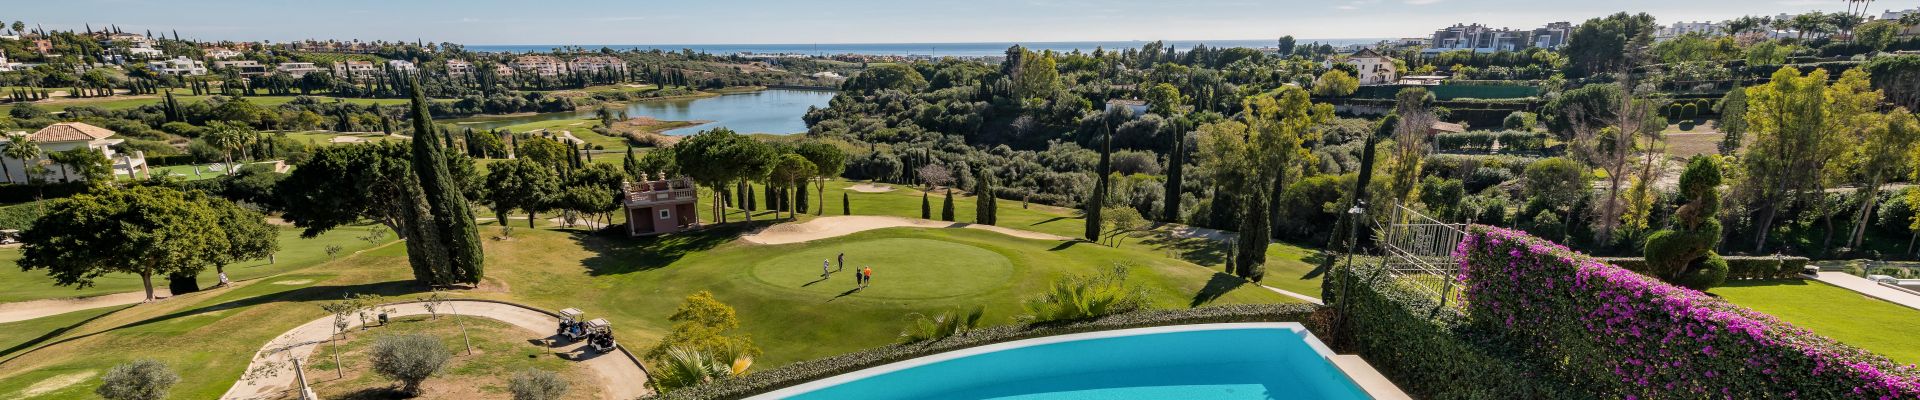 Propiedades de lujo en primera línea de golf en venta en Marbella